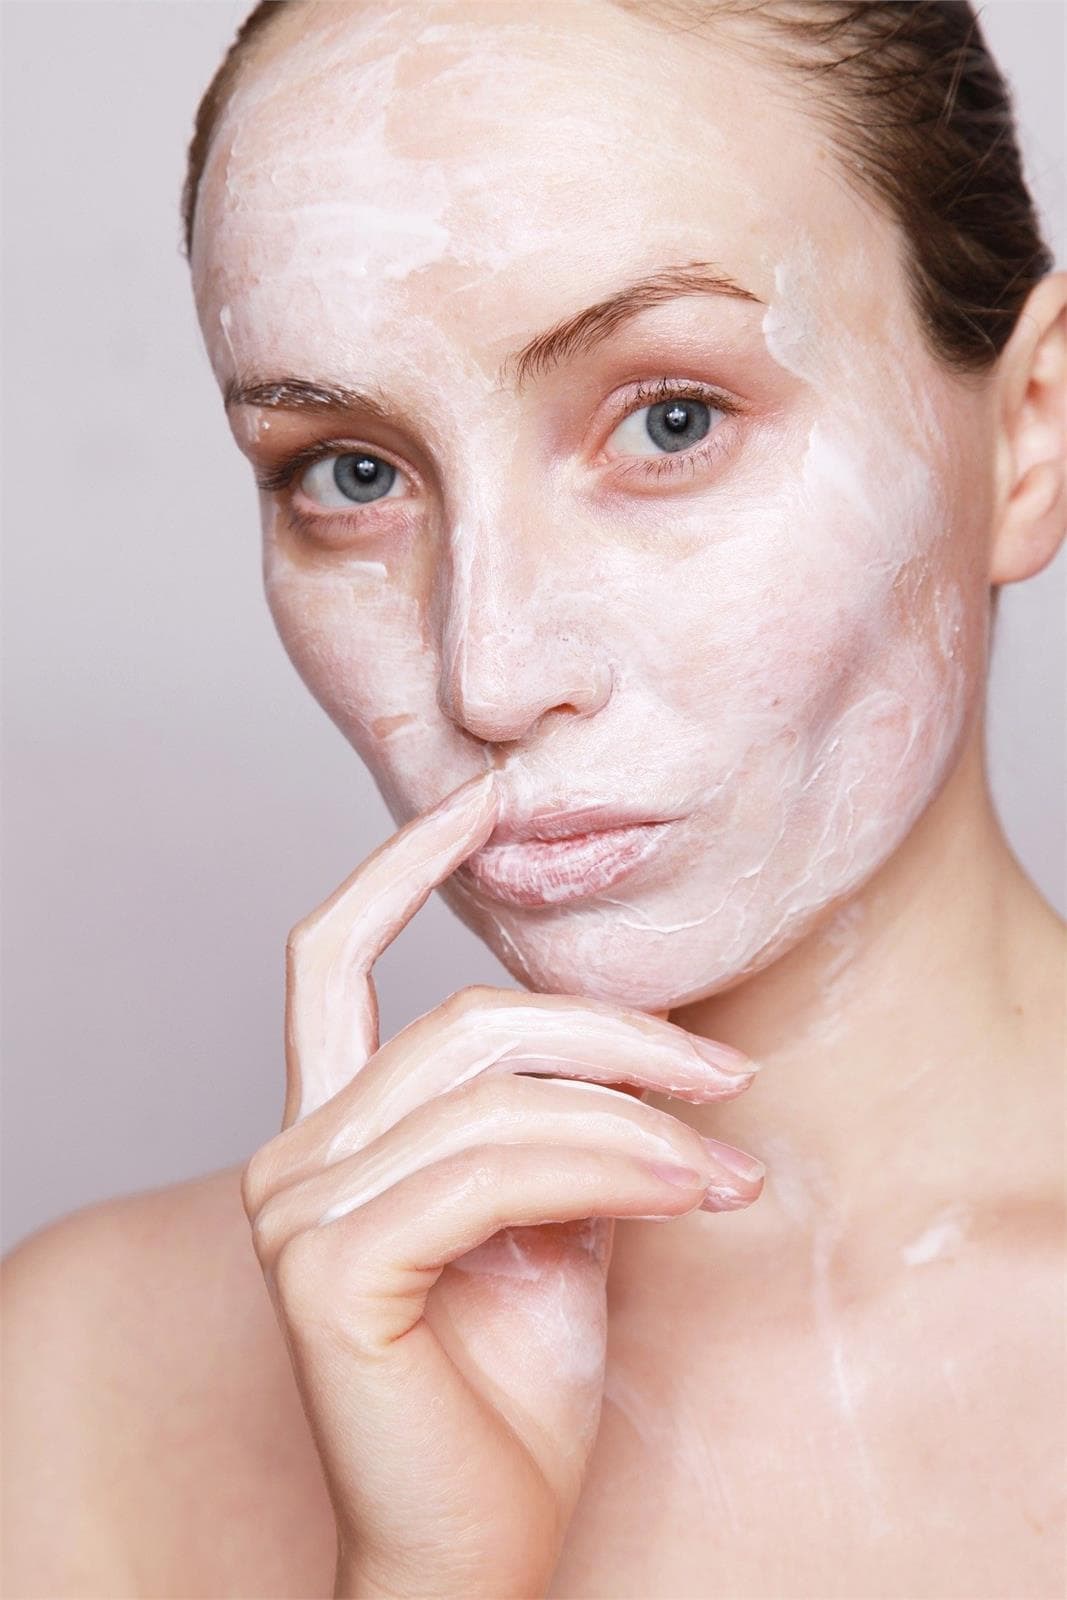 Secretos para el mejor cuidado facial con Campolongo - Imagen 1